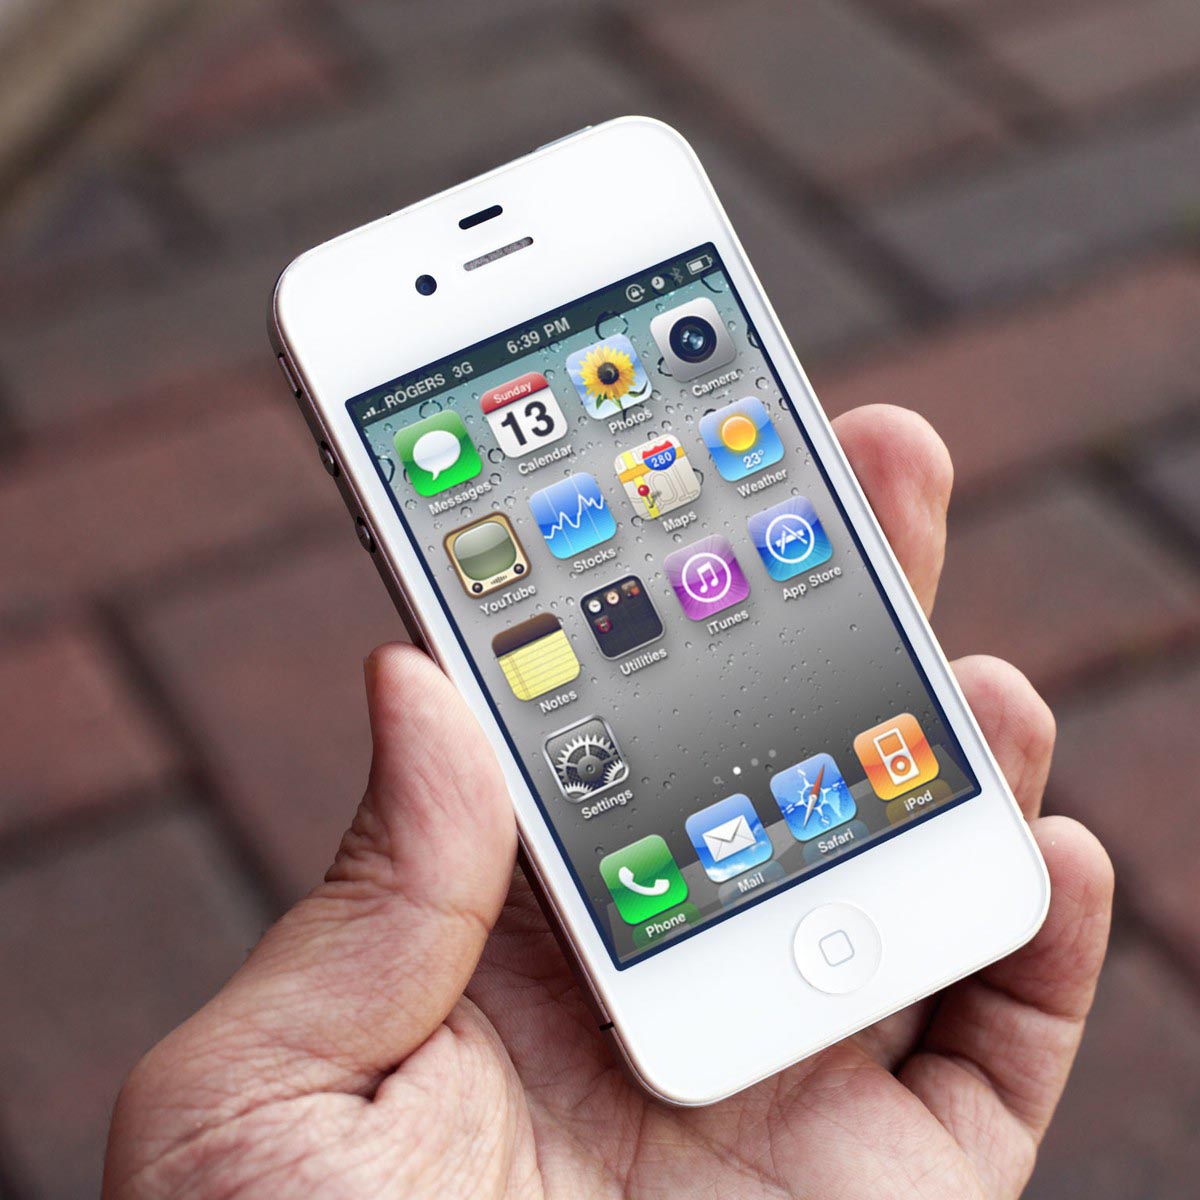 5 xu hướng iPhone đến cả Apple cũng không lường trước được - Ảnh 3.